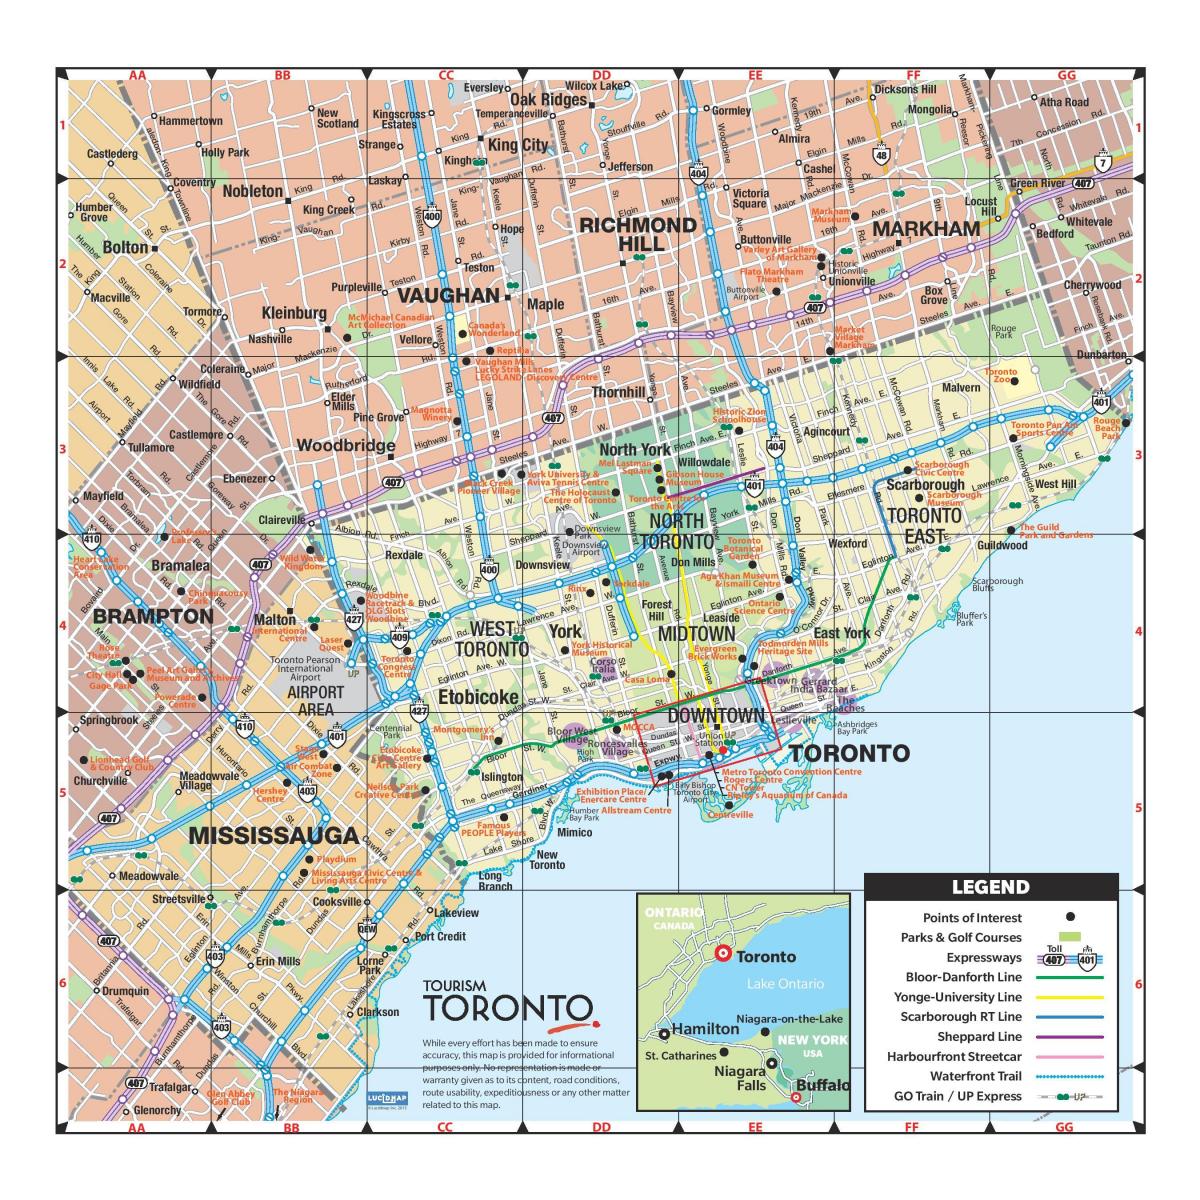 Peta greater Toronto area